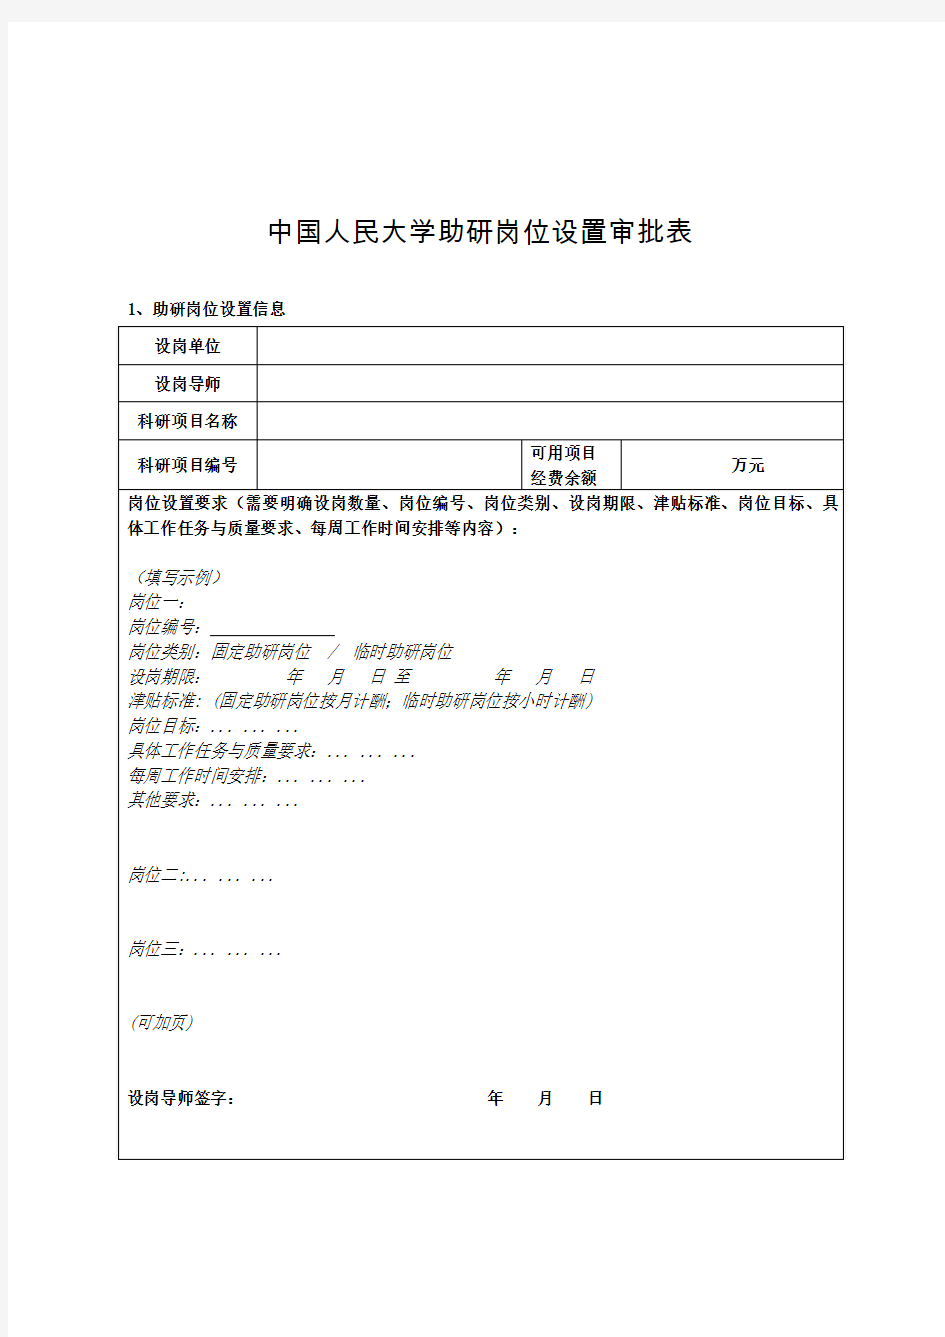 中国人民大学助研岗位设置审批表.